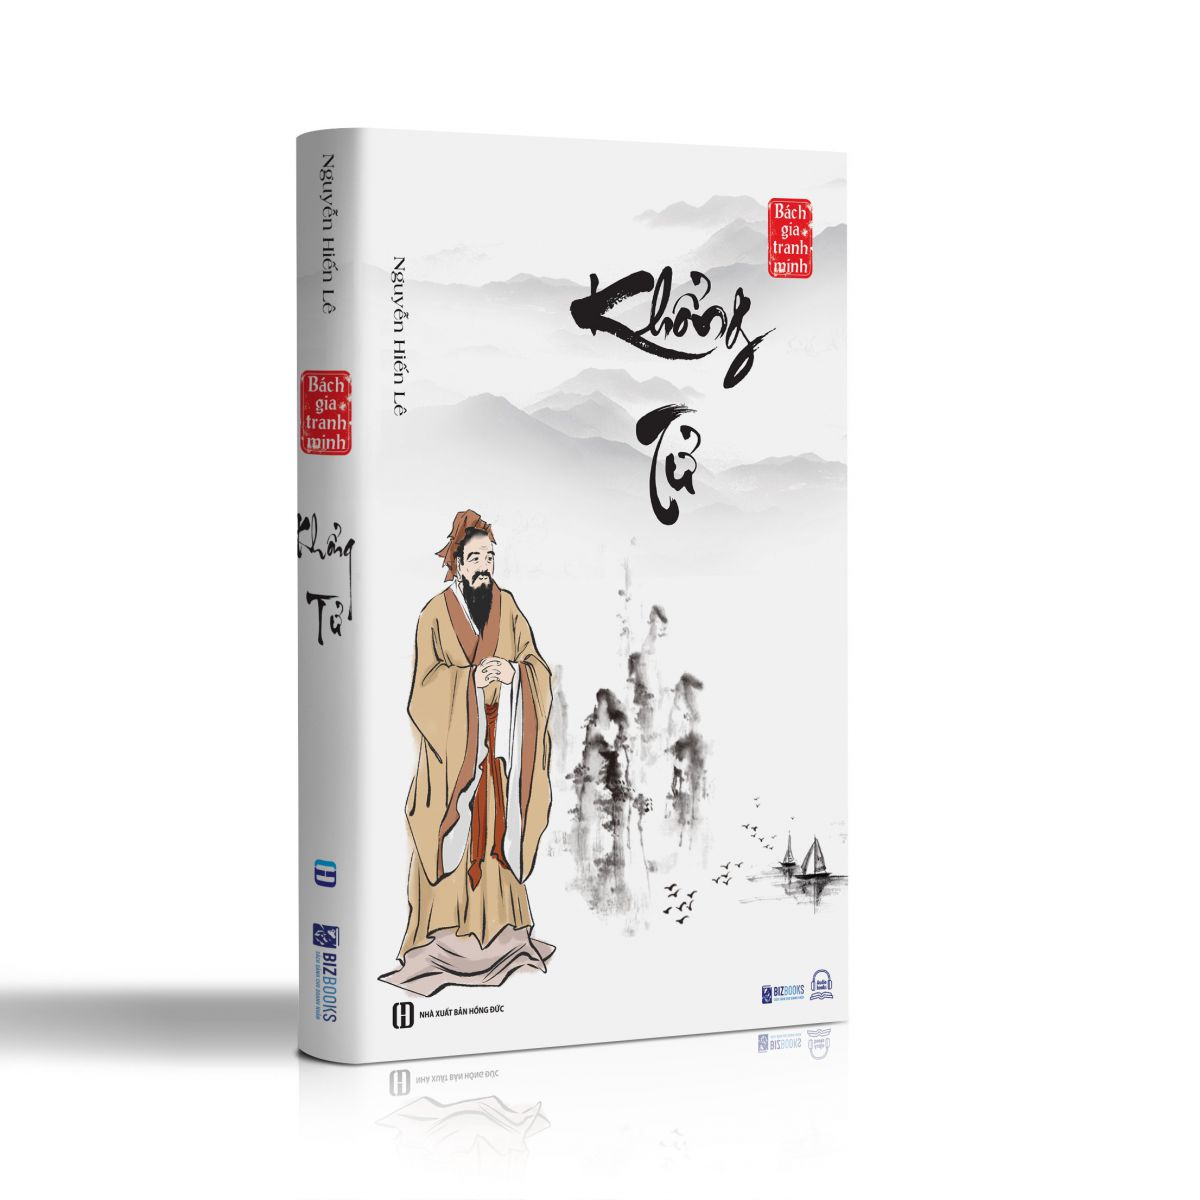 Bách gia tranh minh - Bộ 8 cuốn sách quý hiếm của Nguyễn Hiến Lê 2